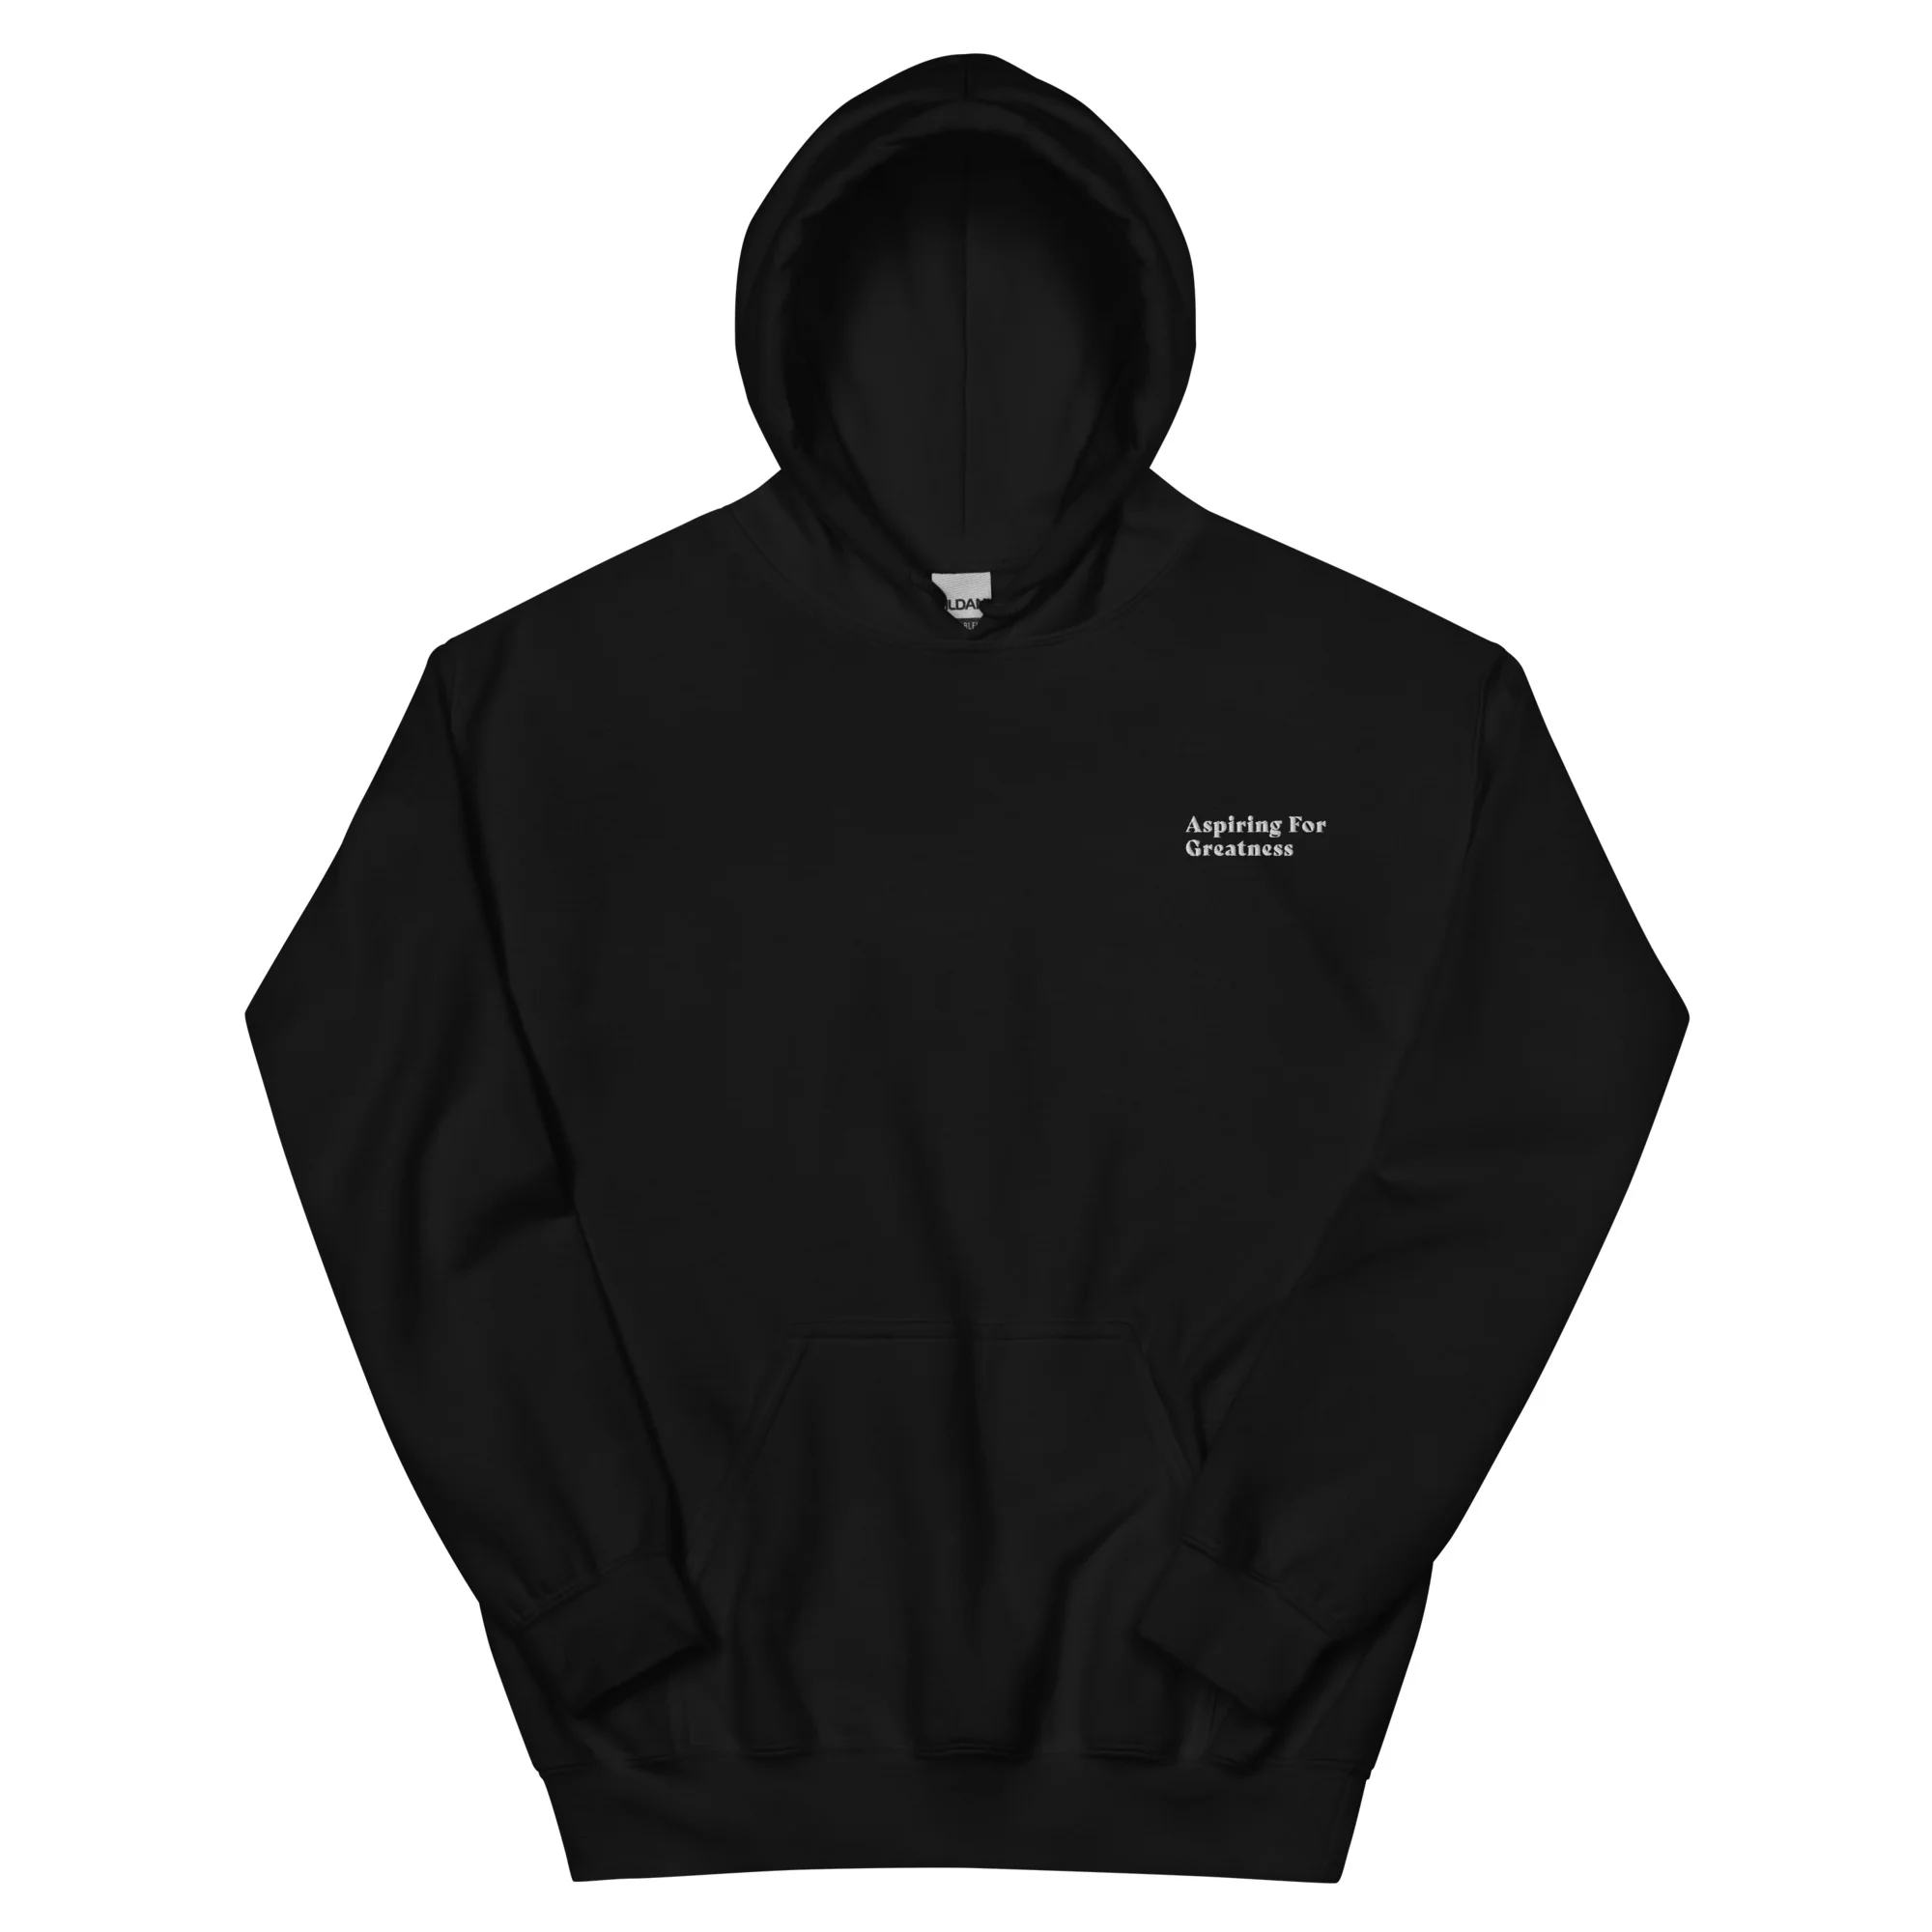 unisex heavy blend hoodie black front 653b8d82efbf2.jpg